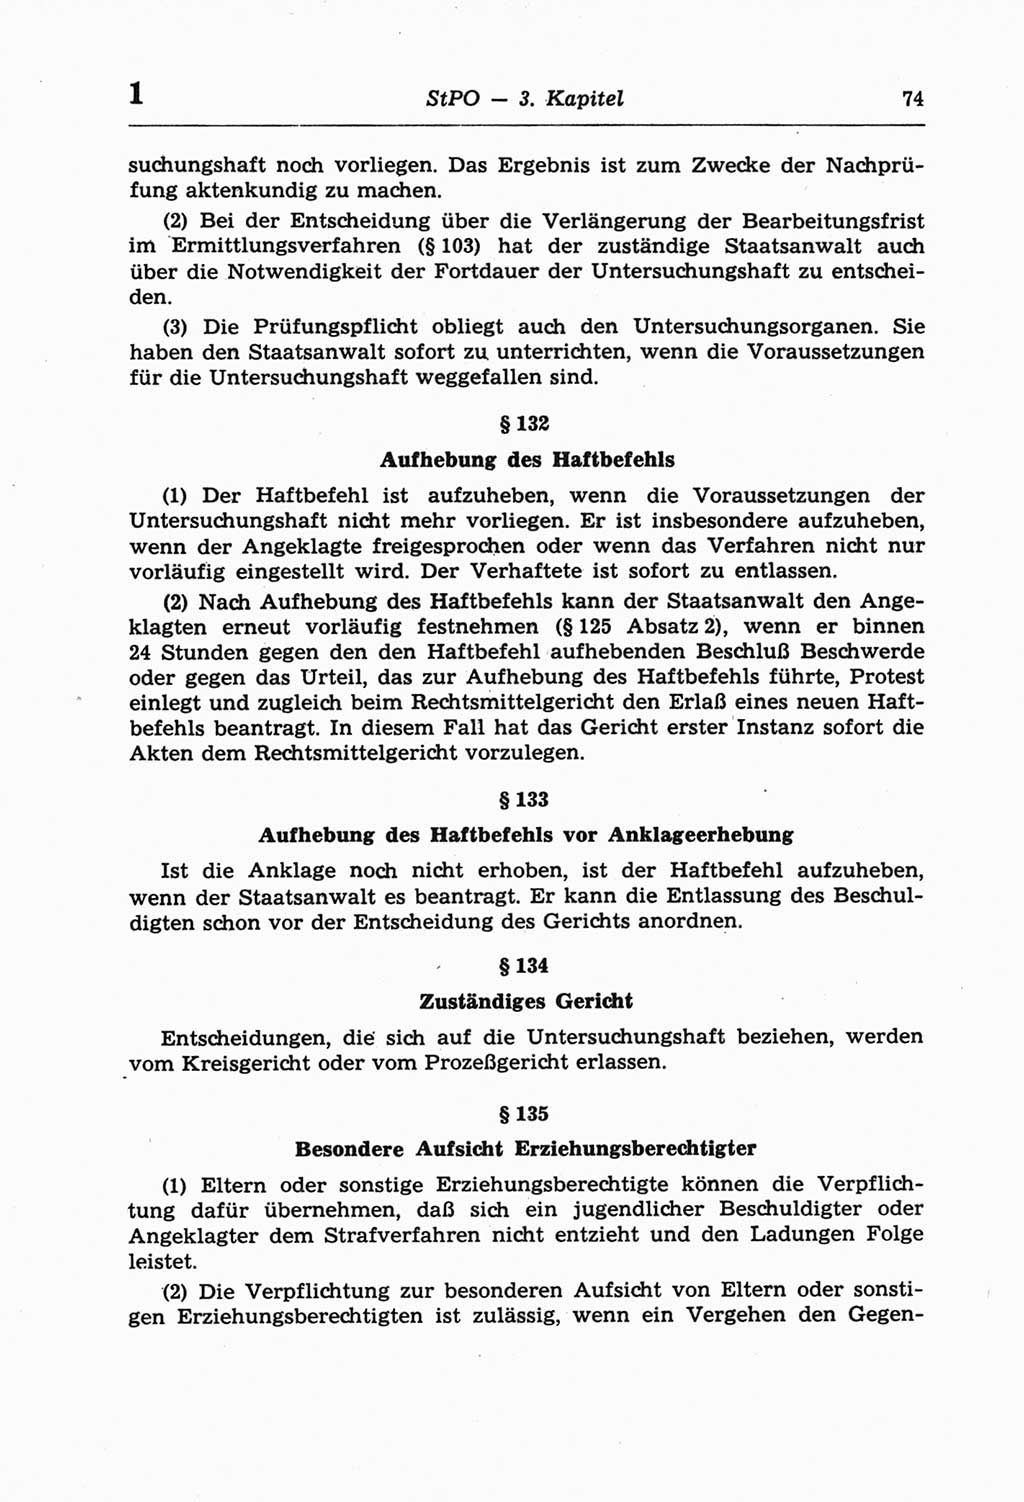 Strafprozeßordnung (StPO) der Deutschen Demokratischen Republik (DDR) und angrenzende Gesetze und Bestimmungen 1968, Seite 74 (StPO Ges. Bstgn. DDR 1968, S. 74)